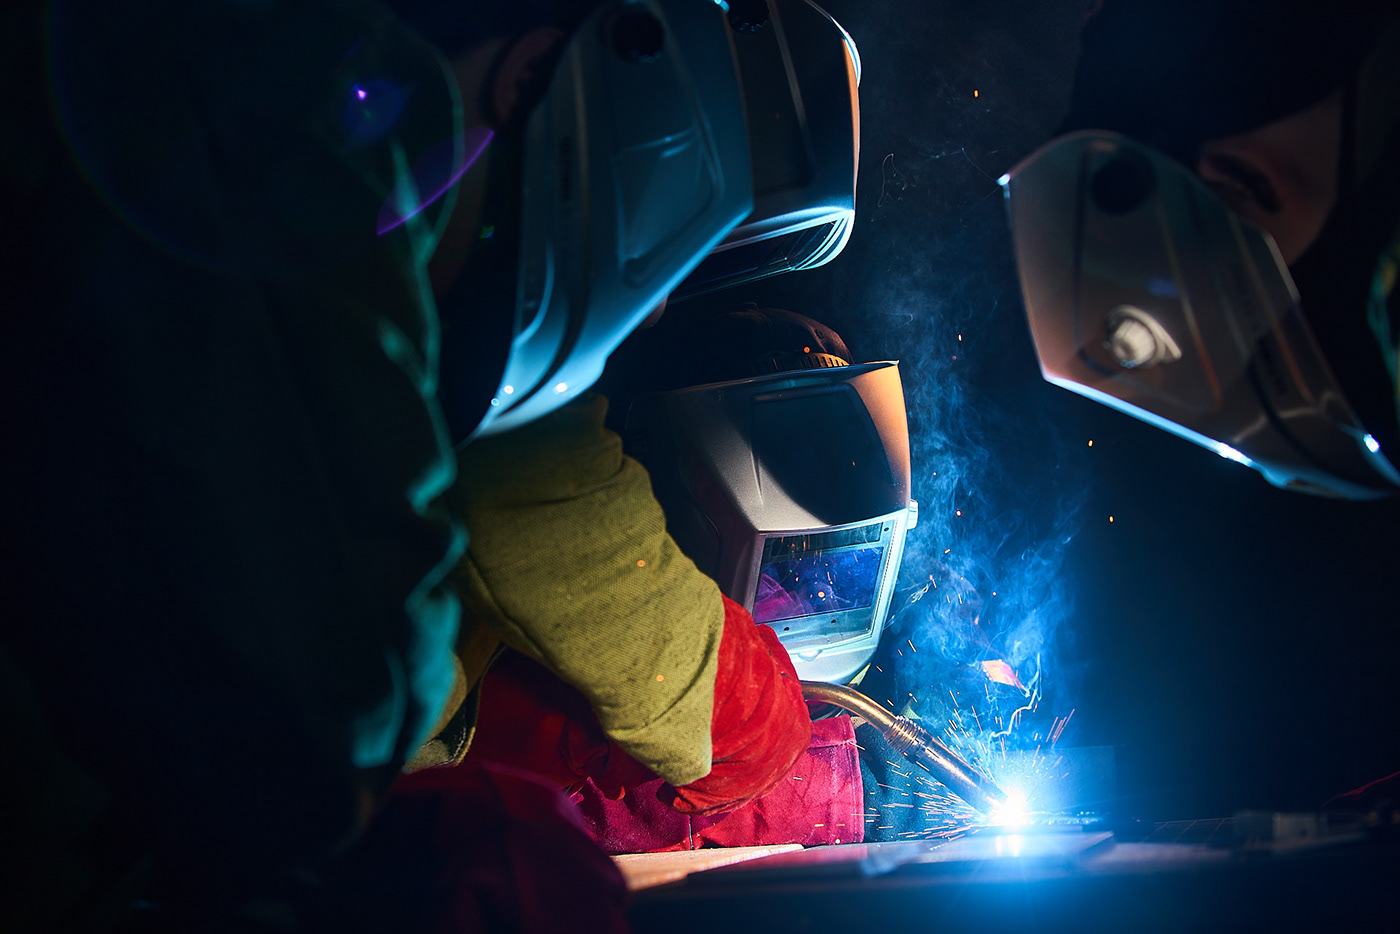 welding индустриальная фотосъёмка металл производство промышленная фотосъемка сварка сварщик